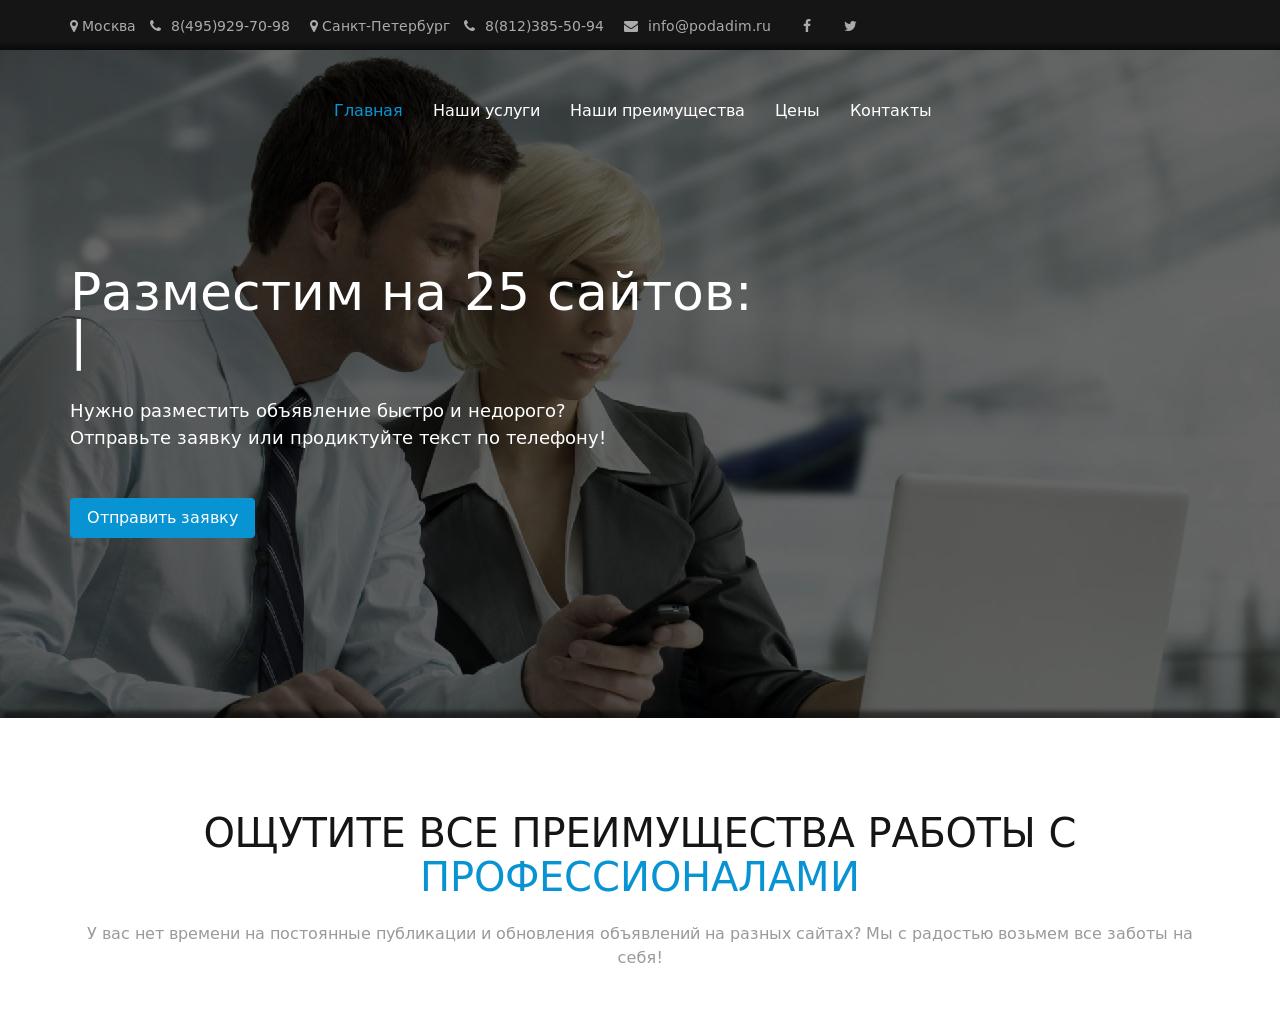 Изображение сайта podadim.ru в разрешении 1280x1024